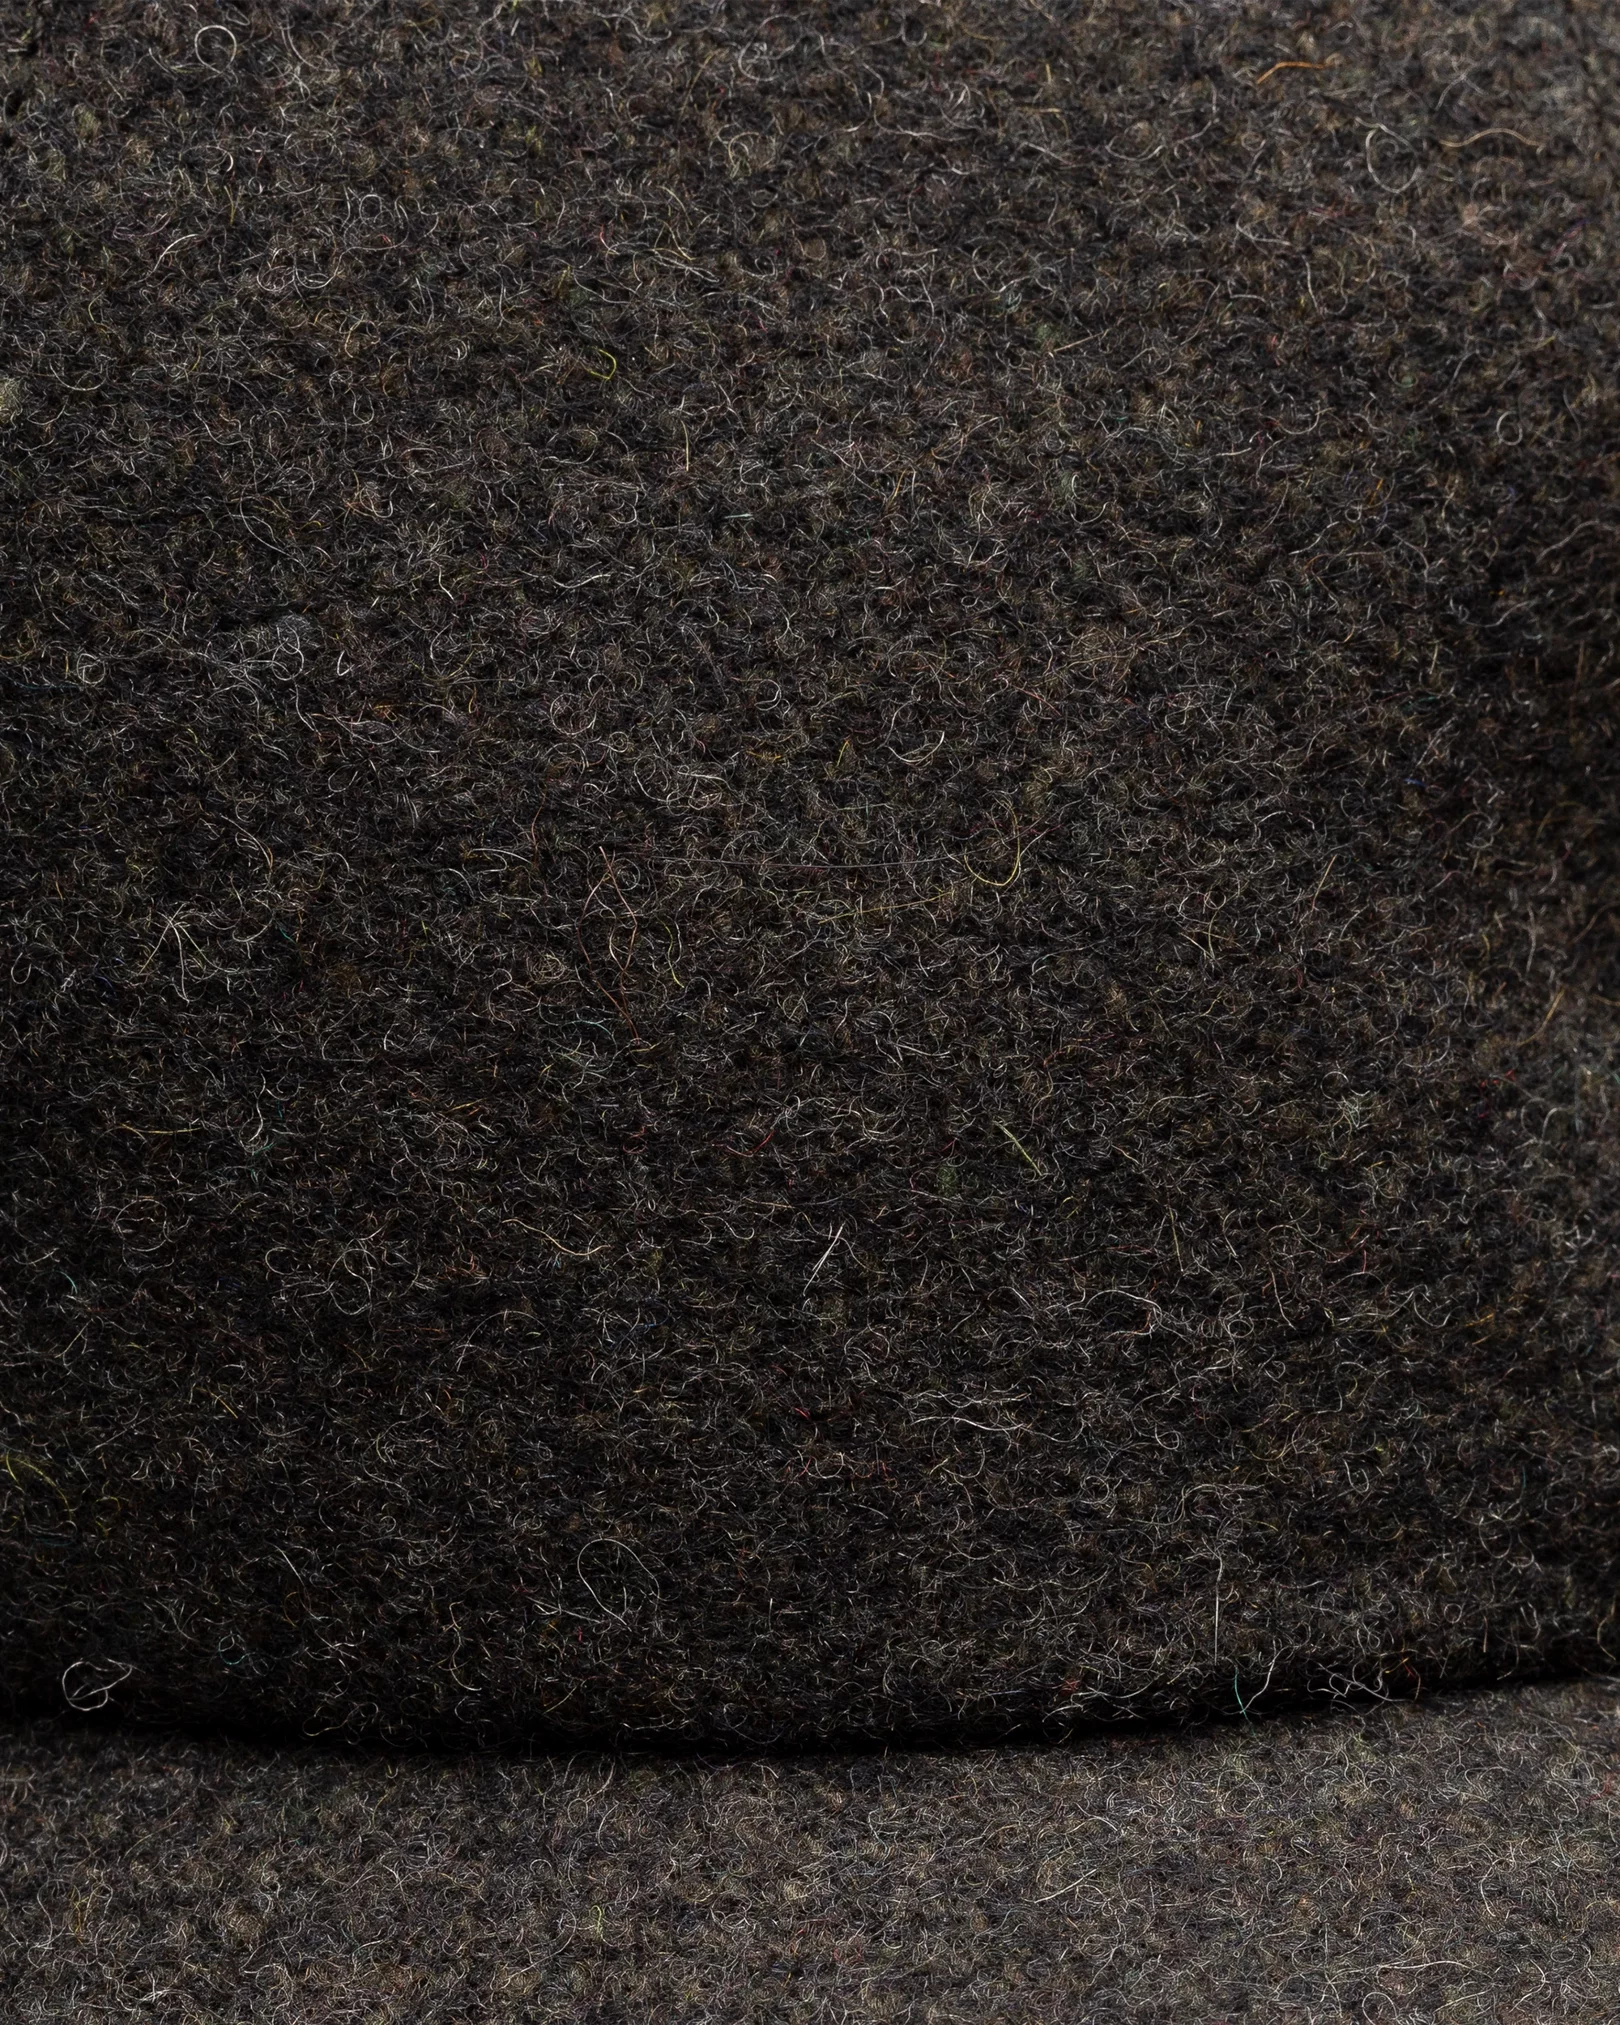 Eton - black wool baseball cap